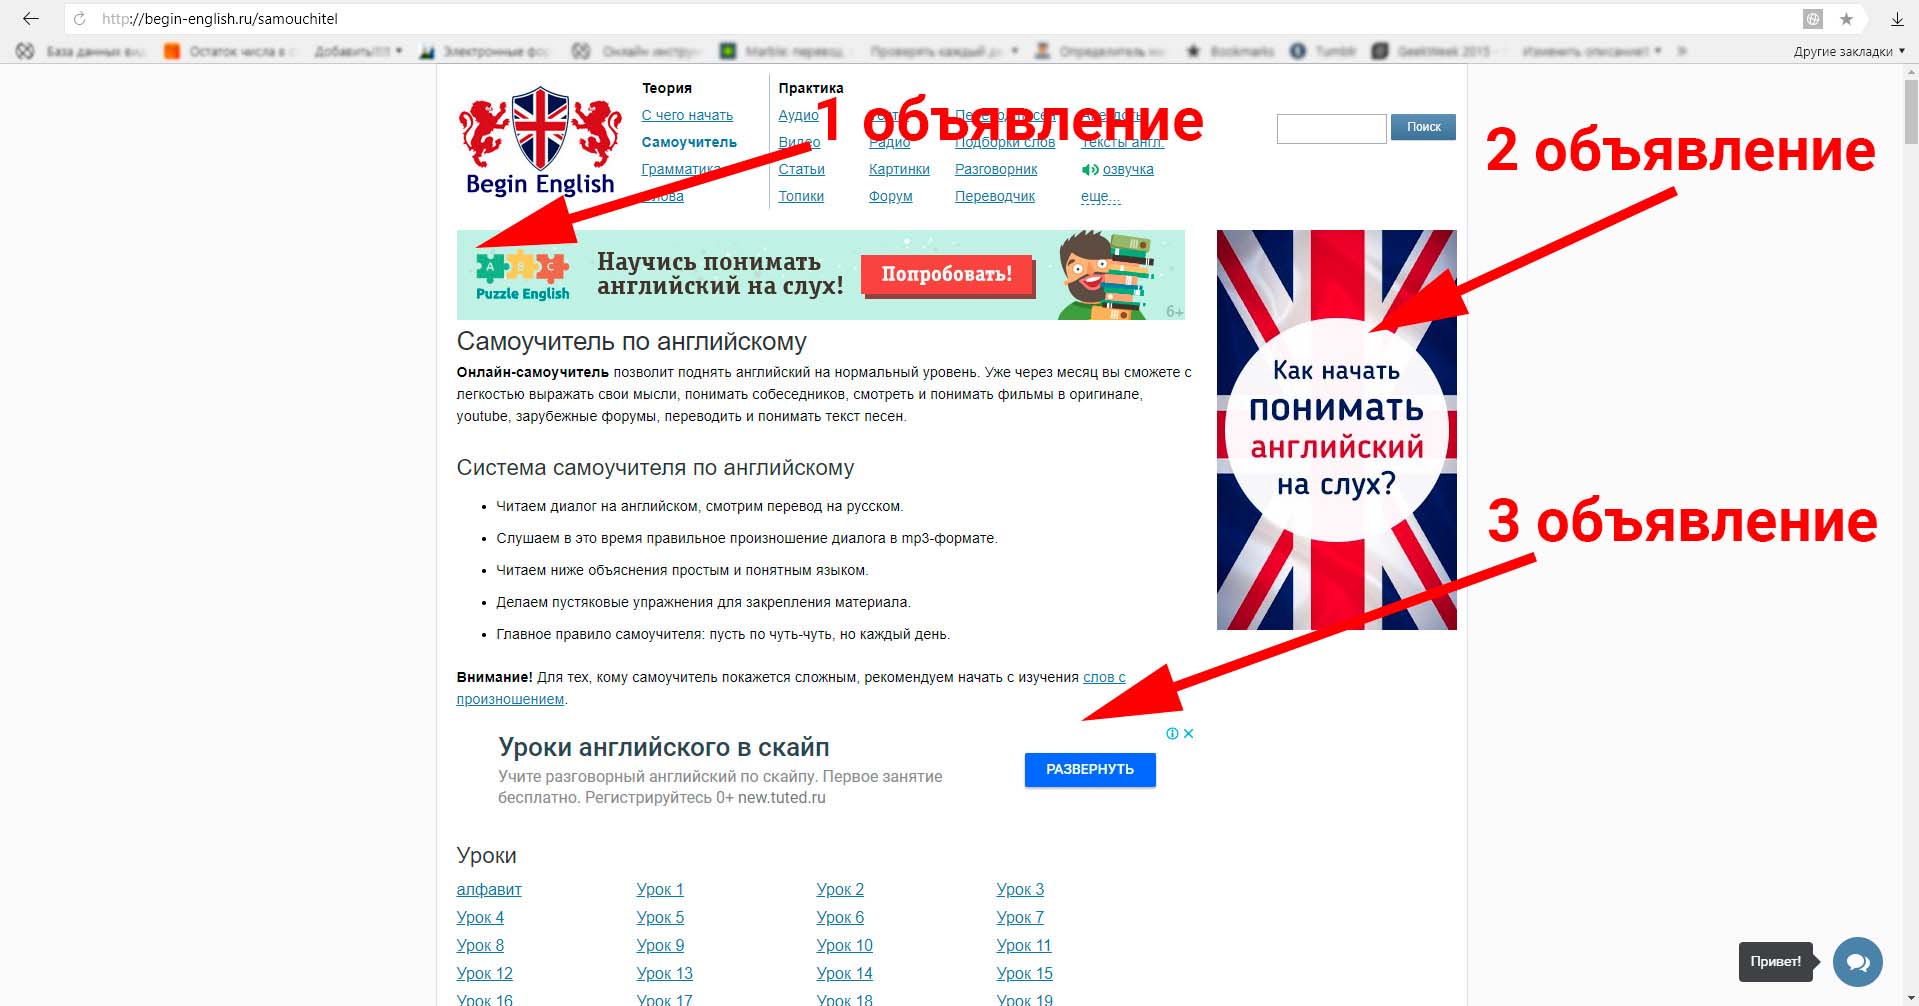 Объявления в рекламной сетия Яндекса (РСЯ)